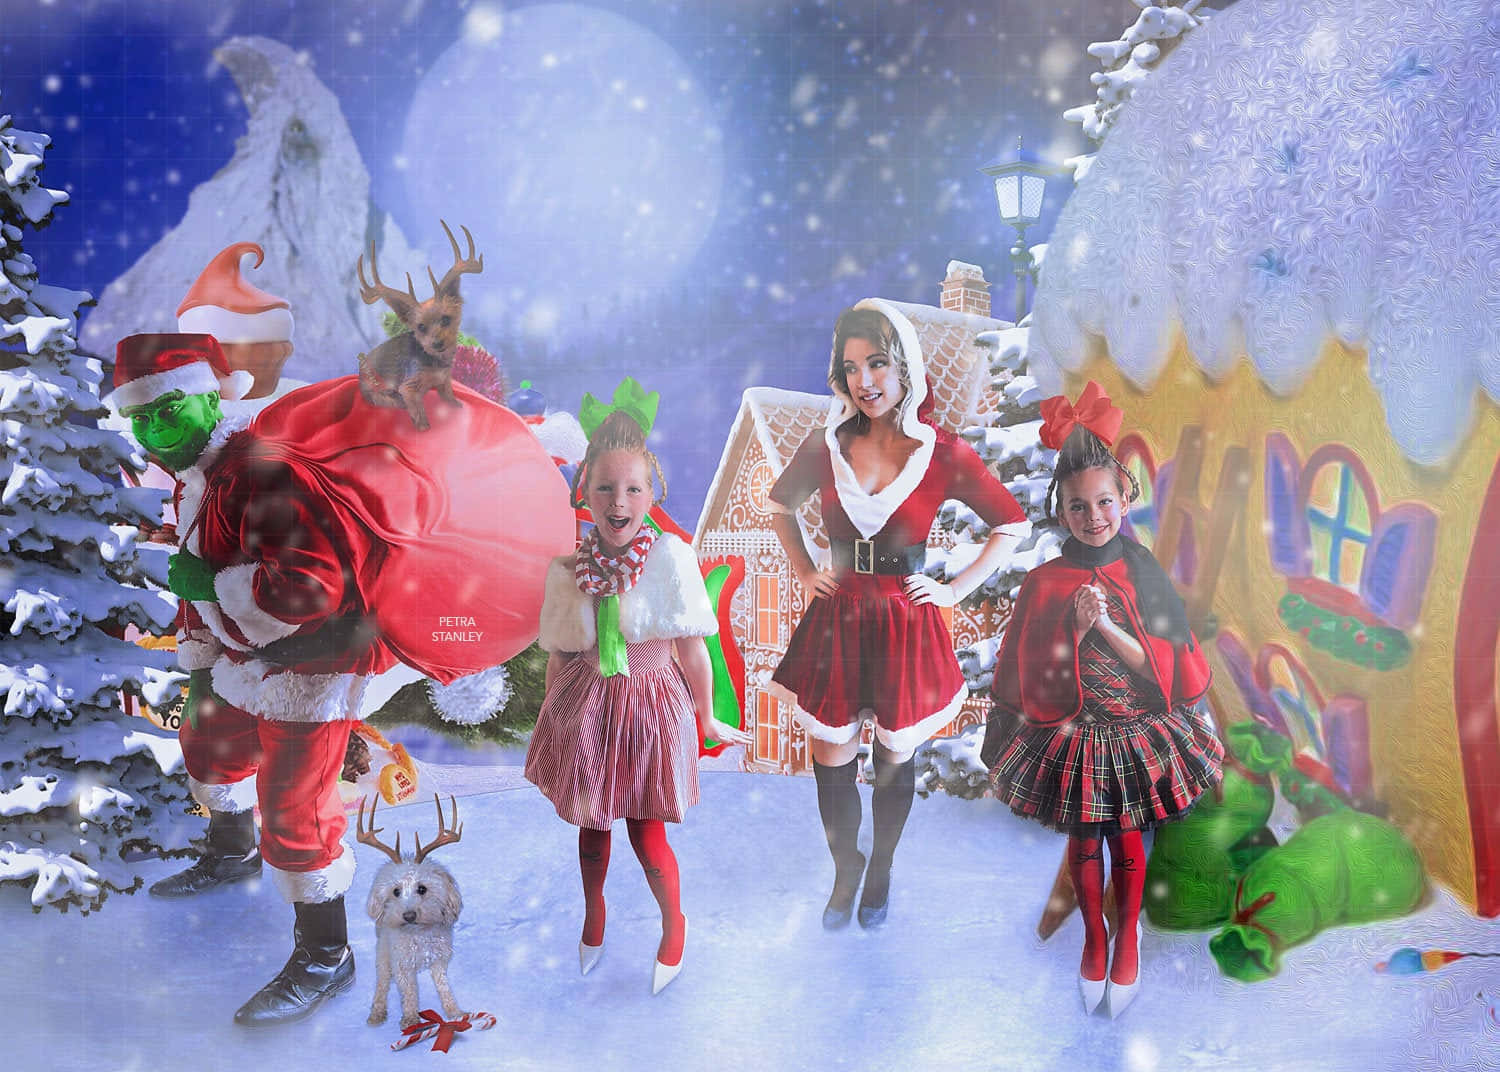 Einegruppe Von Kindern Und Dem Weihnachtsmann In Einer Verschneiten Szene. Wallpaper